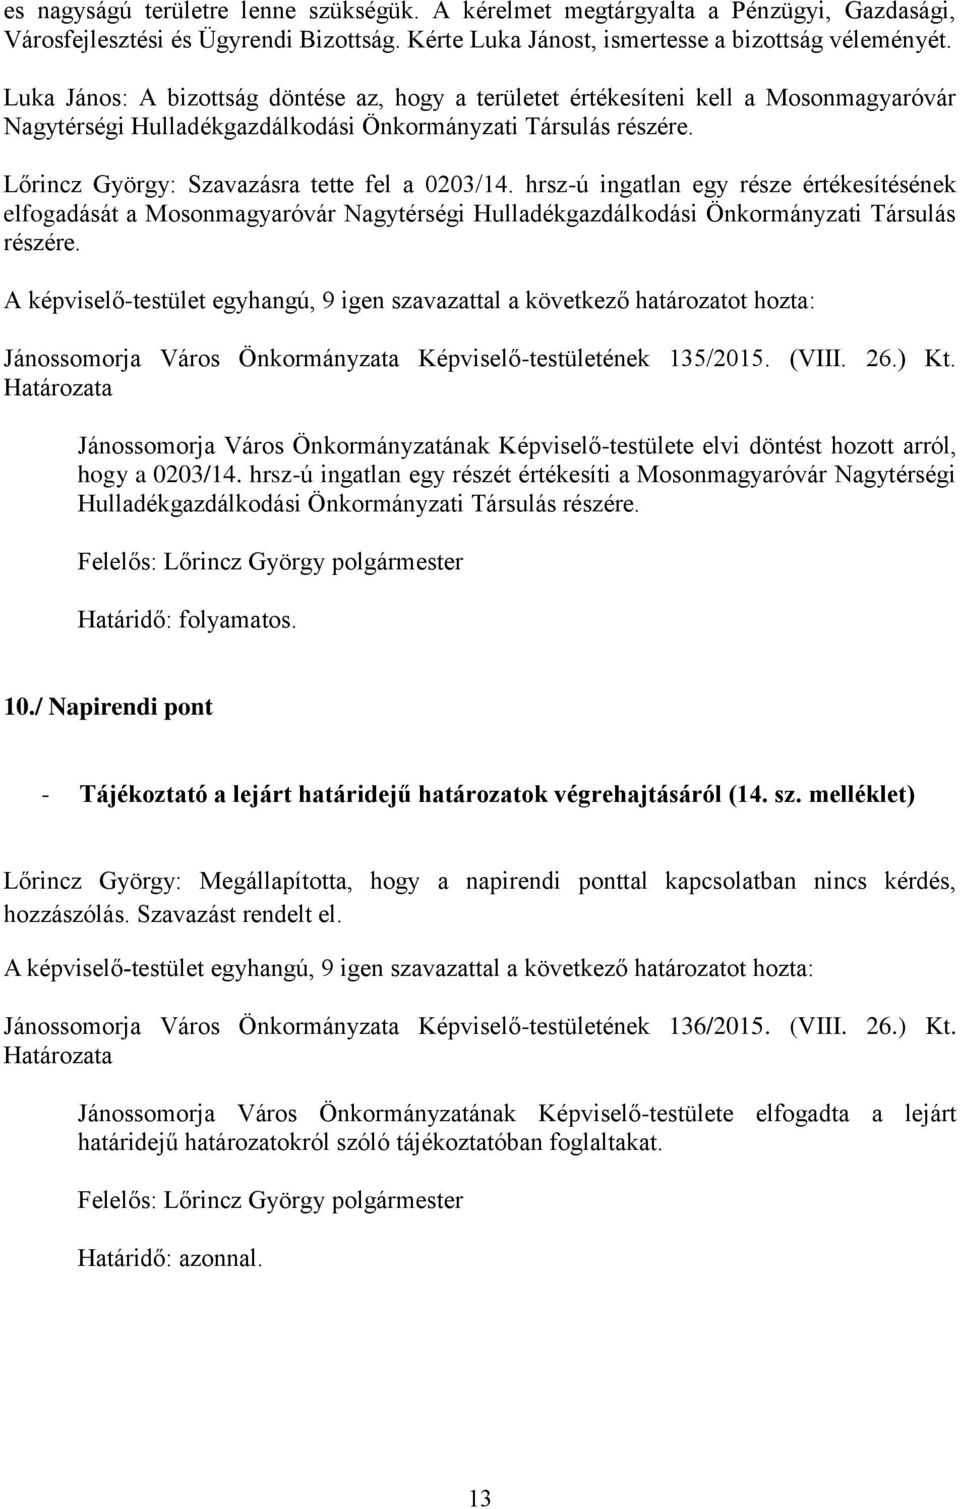 Lőrincz György: Szavazásra tette fel a 0203/14. hrsz-ú ingatlan egy része értékesítésének elfogadását a Mosonmagyaróvár Nagytérségi Hulladékgazdálkodási Önkormányzati Társulás részére.